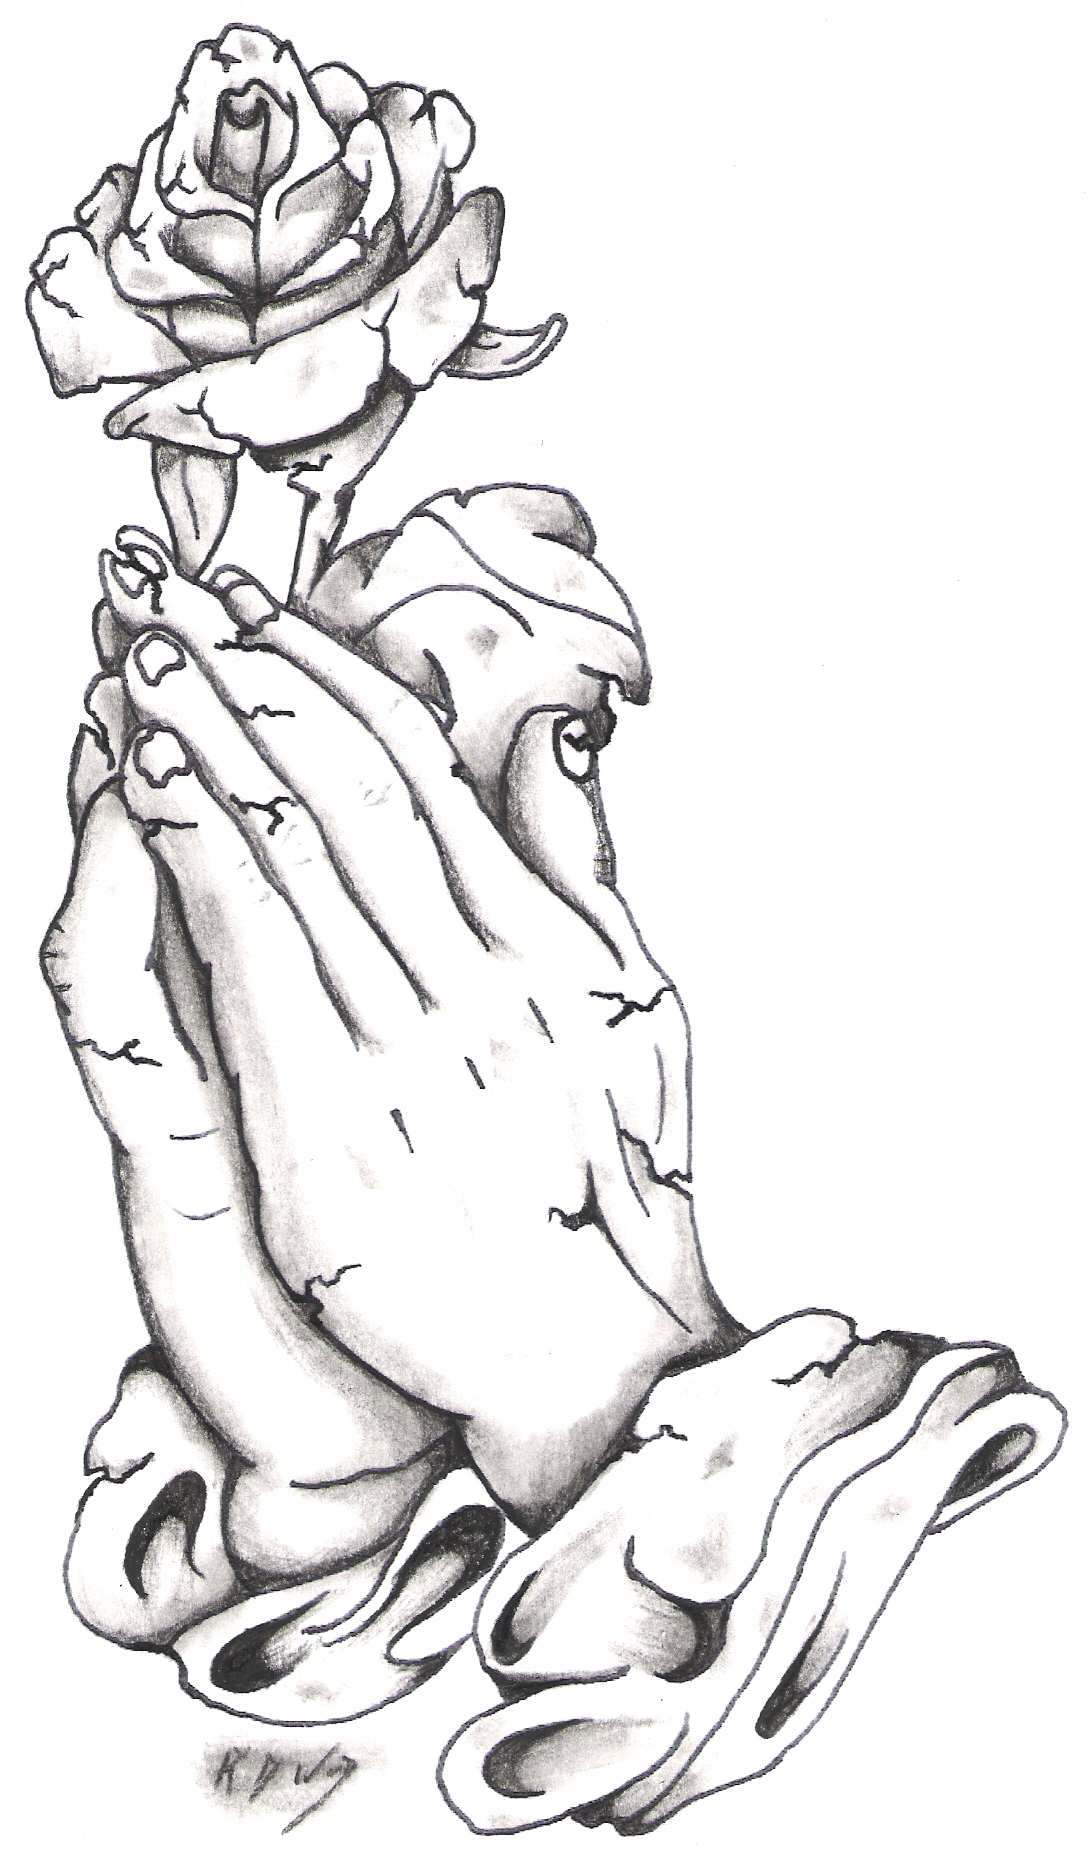 Free Praying Hands Image, Download Free Praying Hands Image png images ...